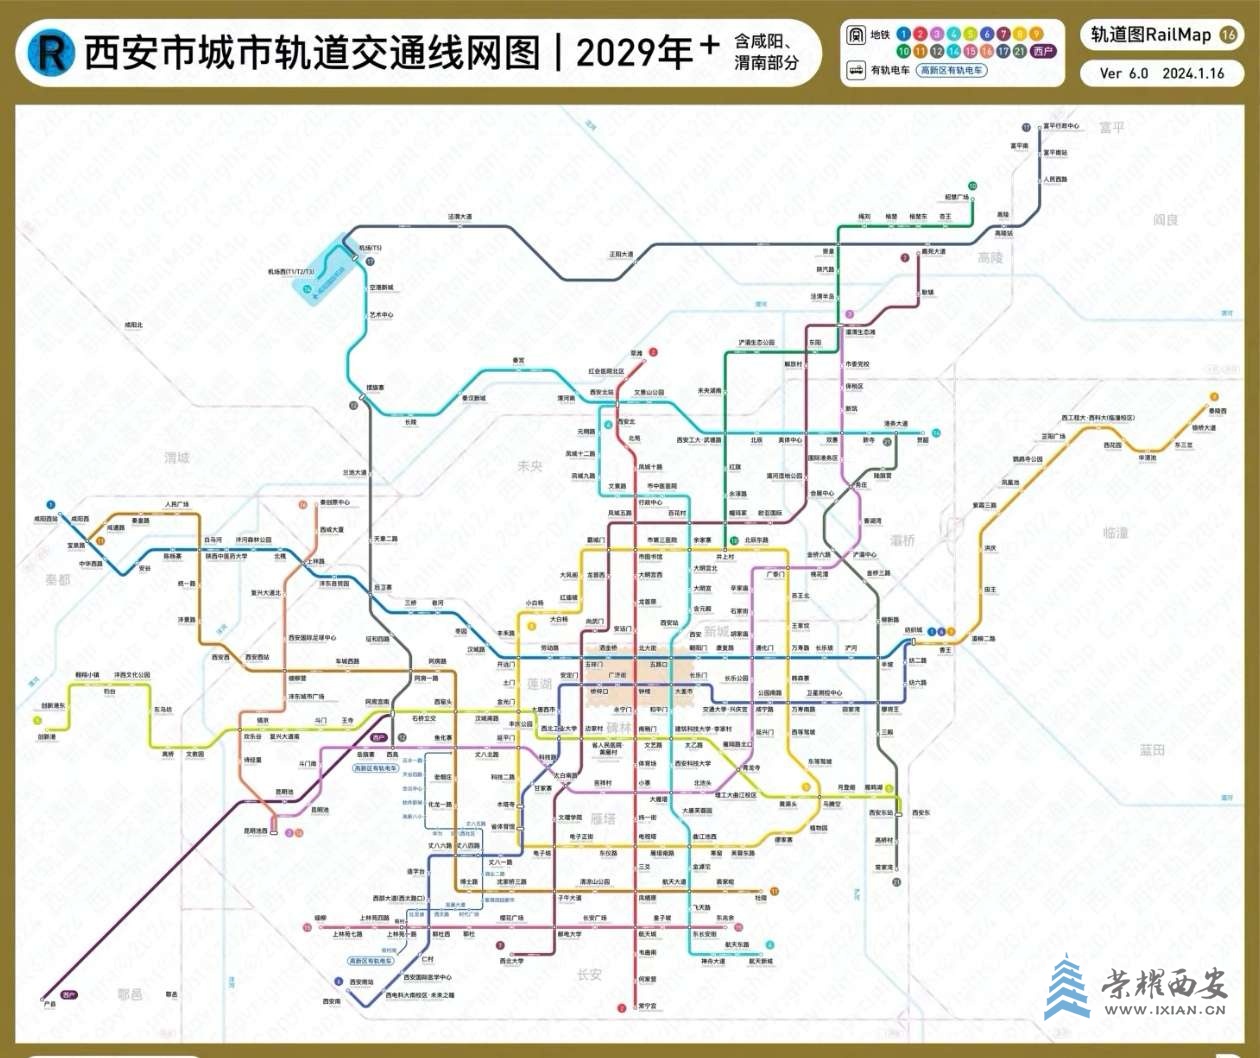 2029年西安地铁运行图